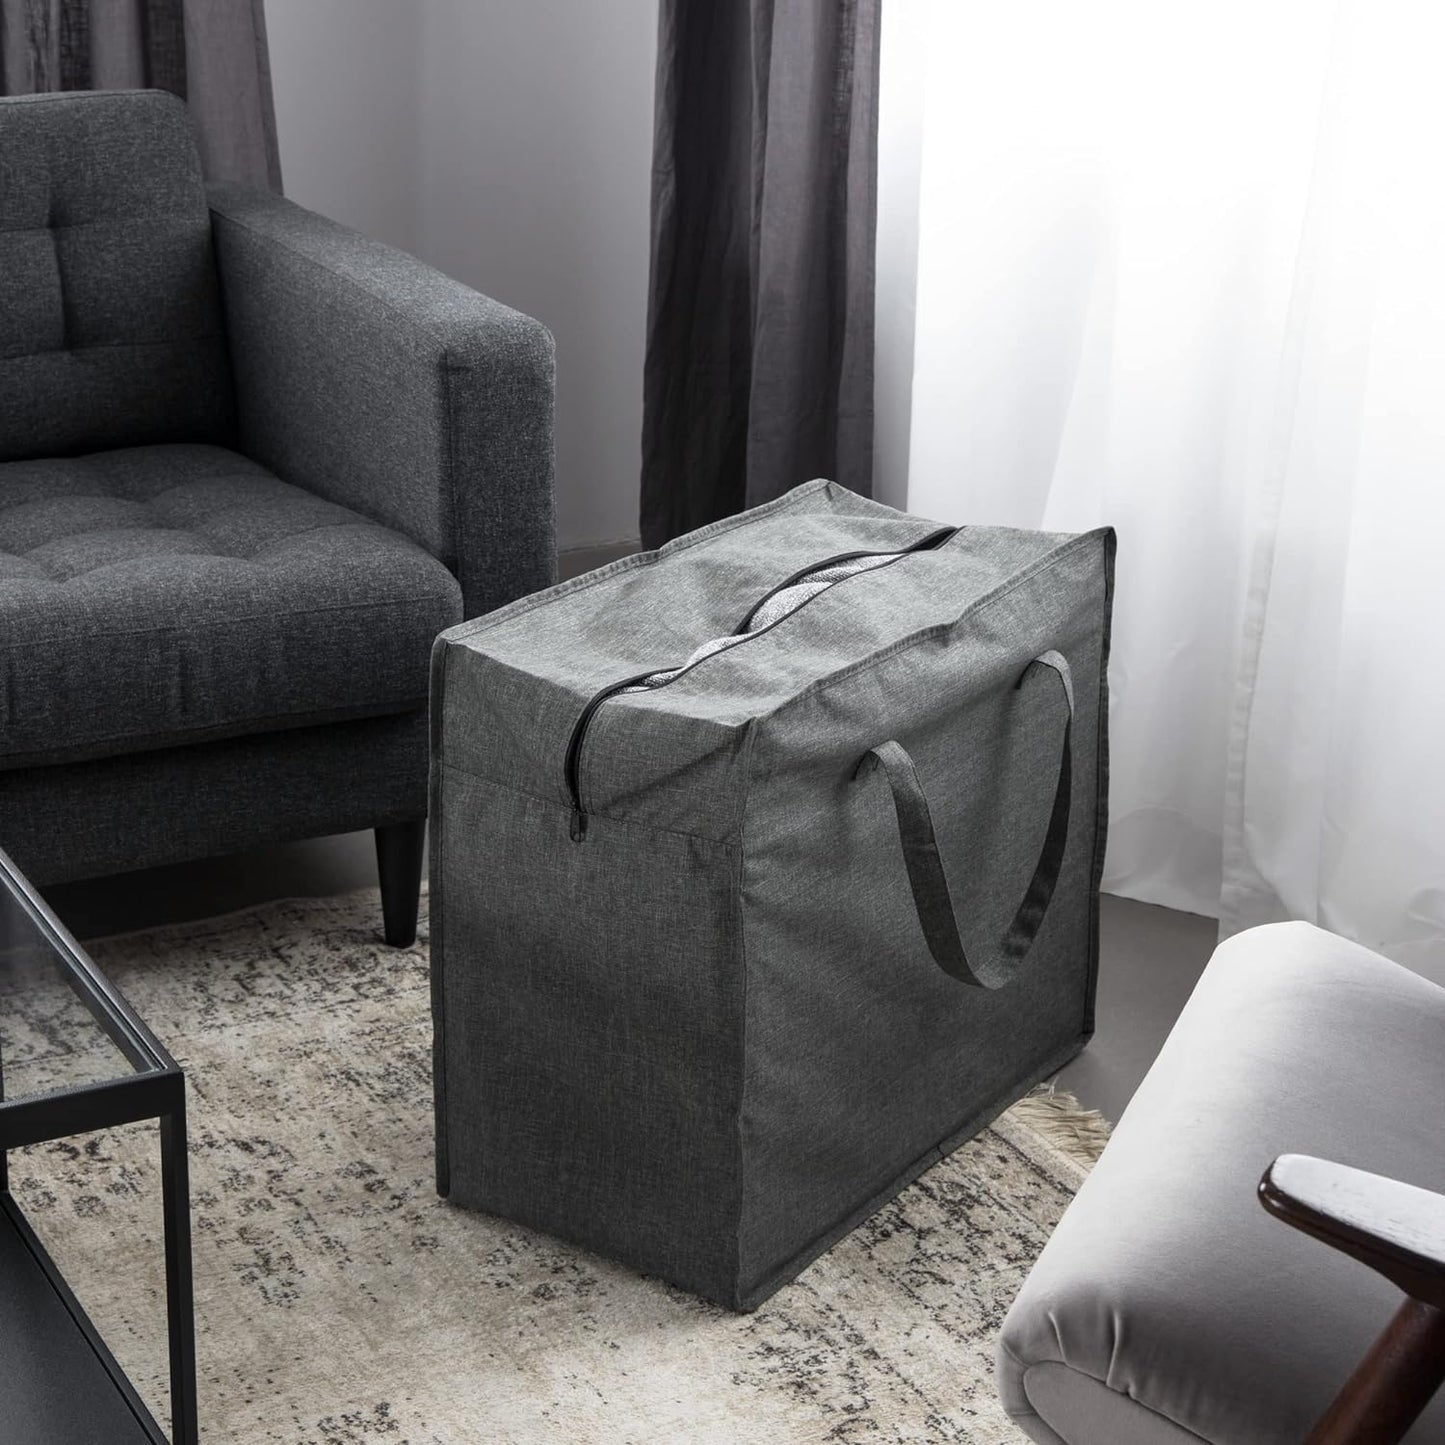 Bigso Soft Storage Bag XL | Blanket Storage Bags with Zipper | 23.6” x 11.8” x 19.7”